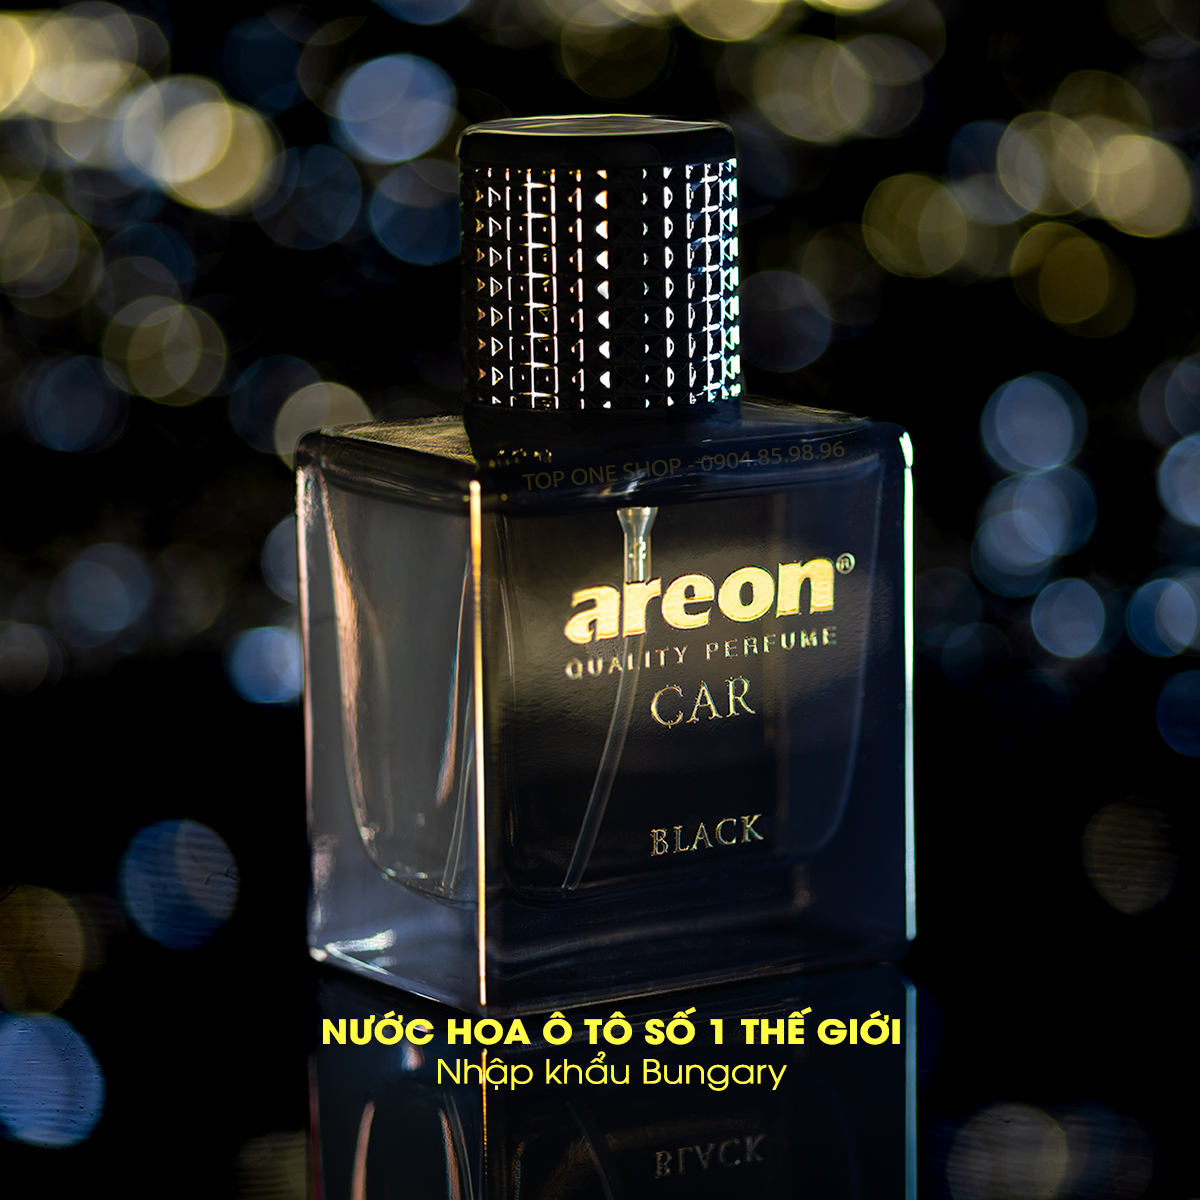 Nước hoa ô tô cao cấp AREON Car Black Perfume 50ml - NHẬP KHẨU BULGARIA